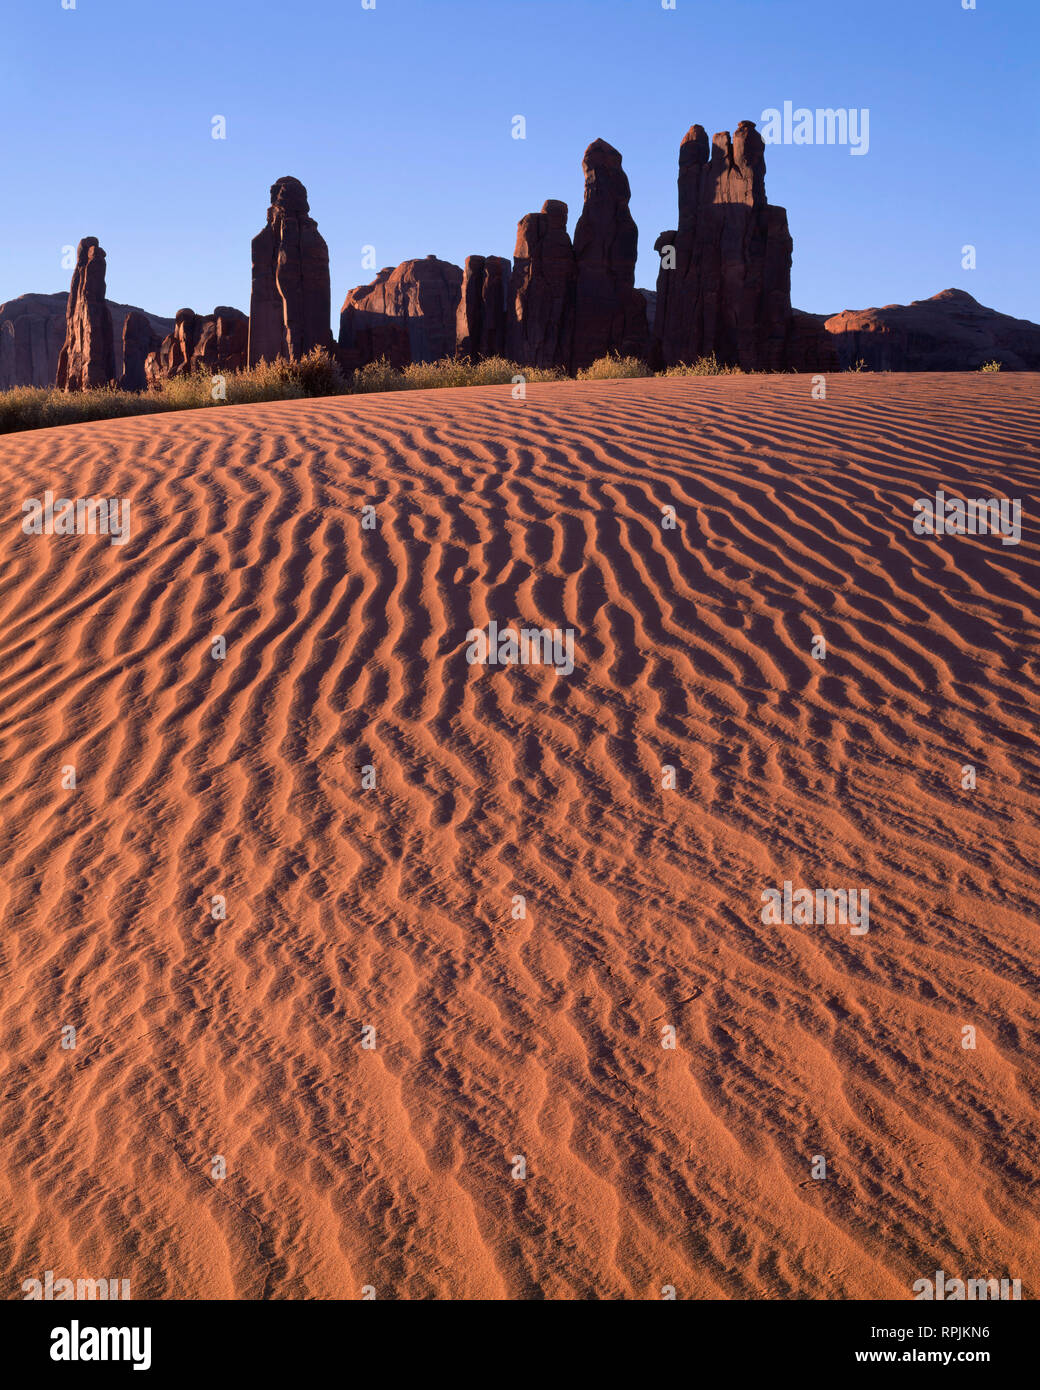 Stati Uniti d'America, Arizona, il parco tribale Navajo, Sunrise definisce la texture di dune di sabbia con torri di roccia chiamato Yei-Bi-Chei aumento nella distanza. Foto Stock